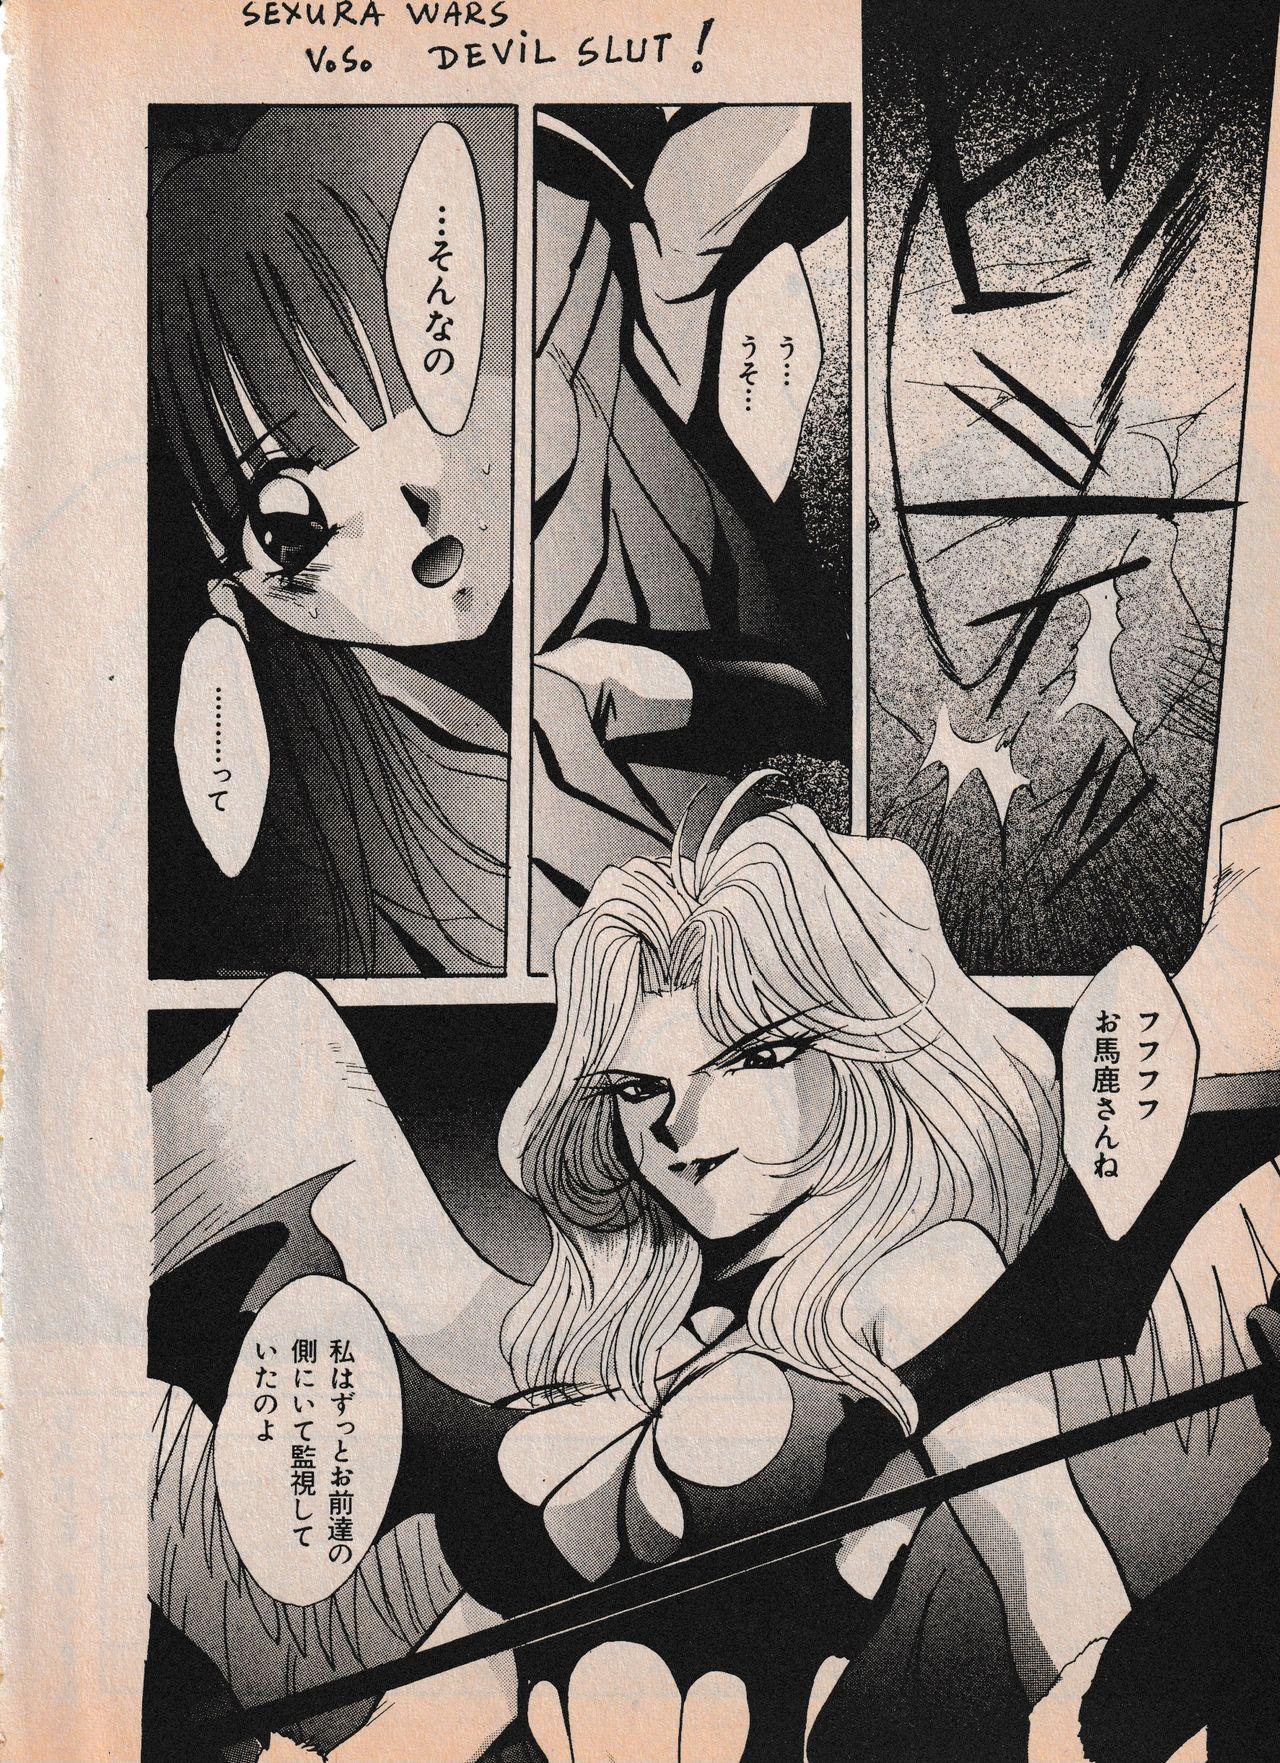 Sailor X vol. 4 - Sailor X vs. Cunty Horny! 56